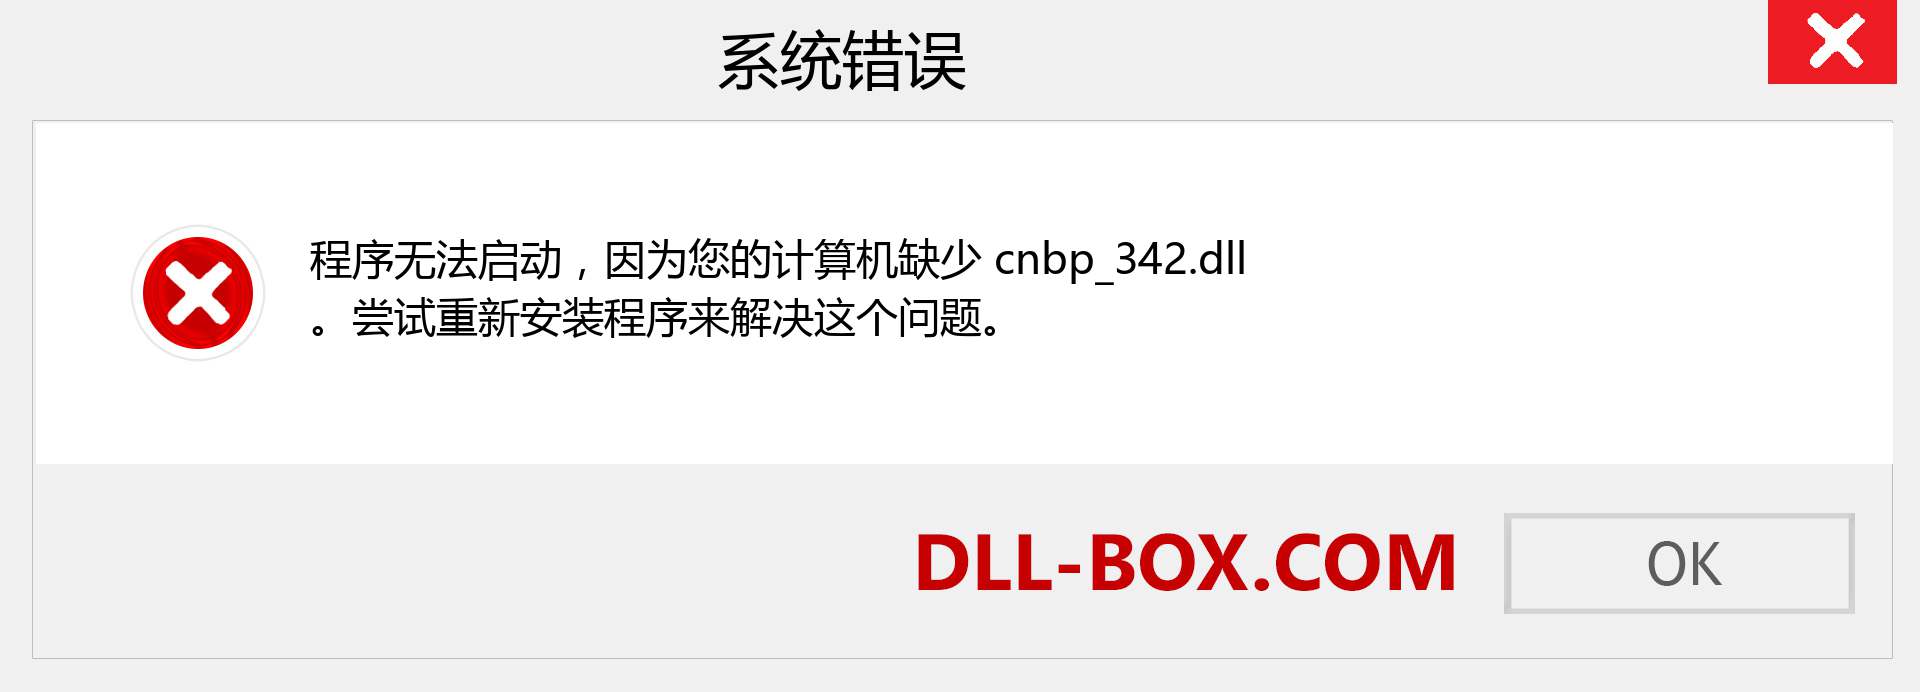 cnbp_342.dll 文件丢失？。 适用于 Windows 7、8、10 的下载 - 修复 Windows、照片、图像上的 cnbp_342 dll 丢失错误